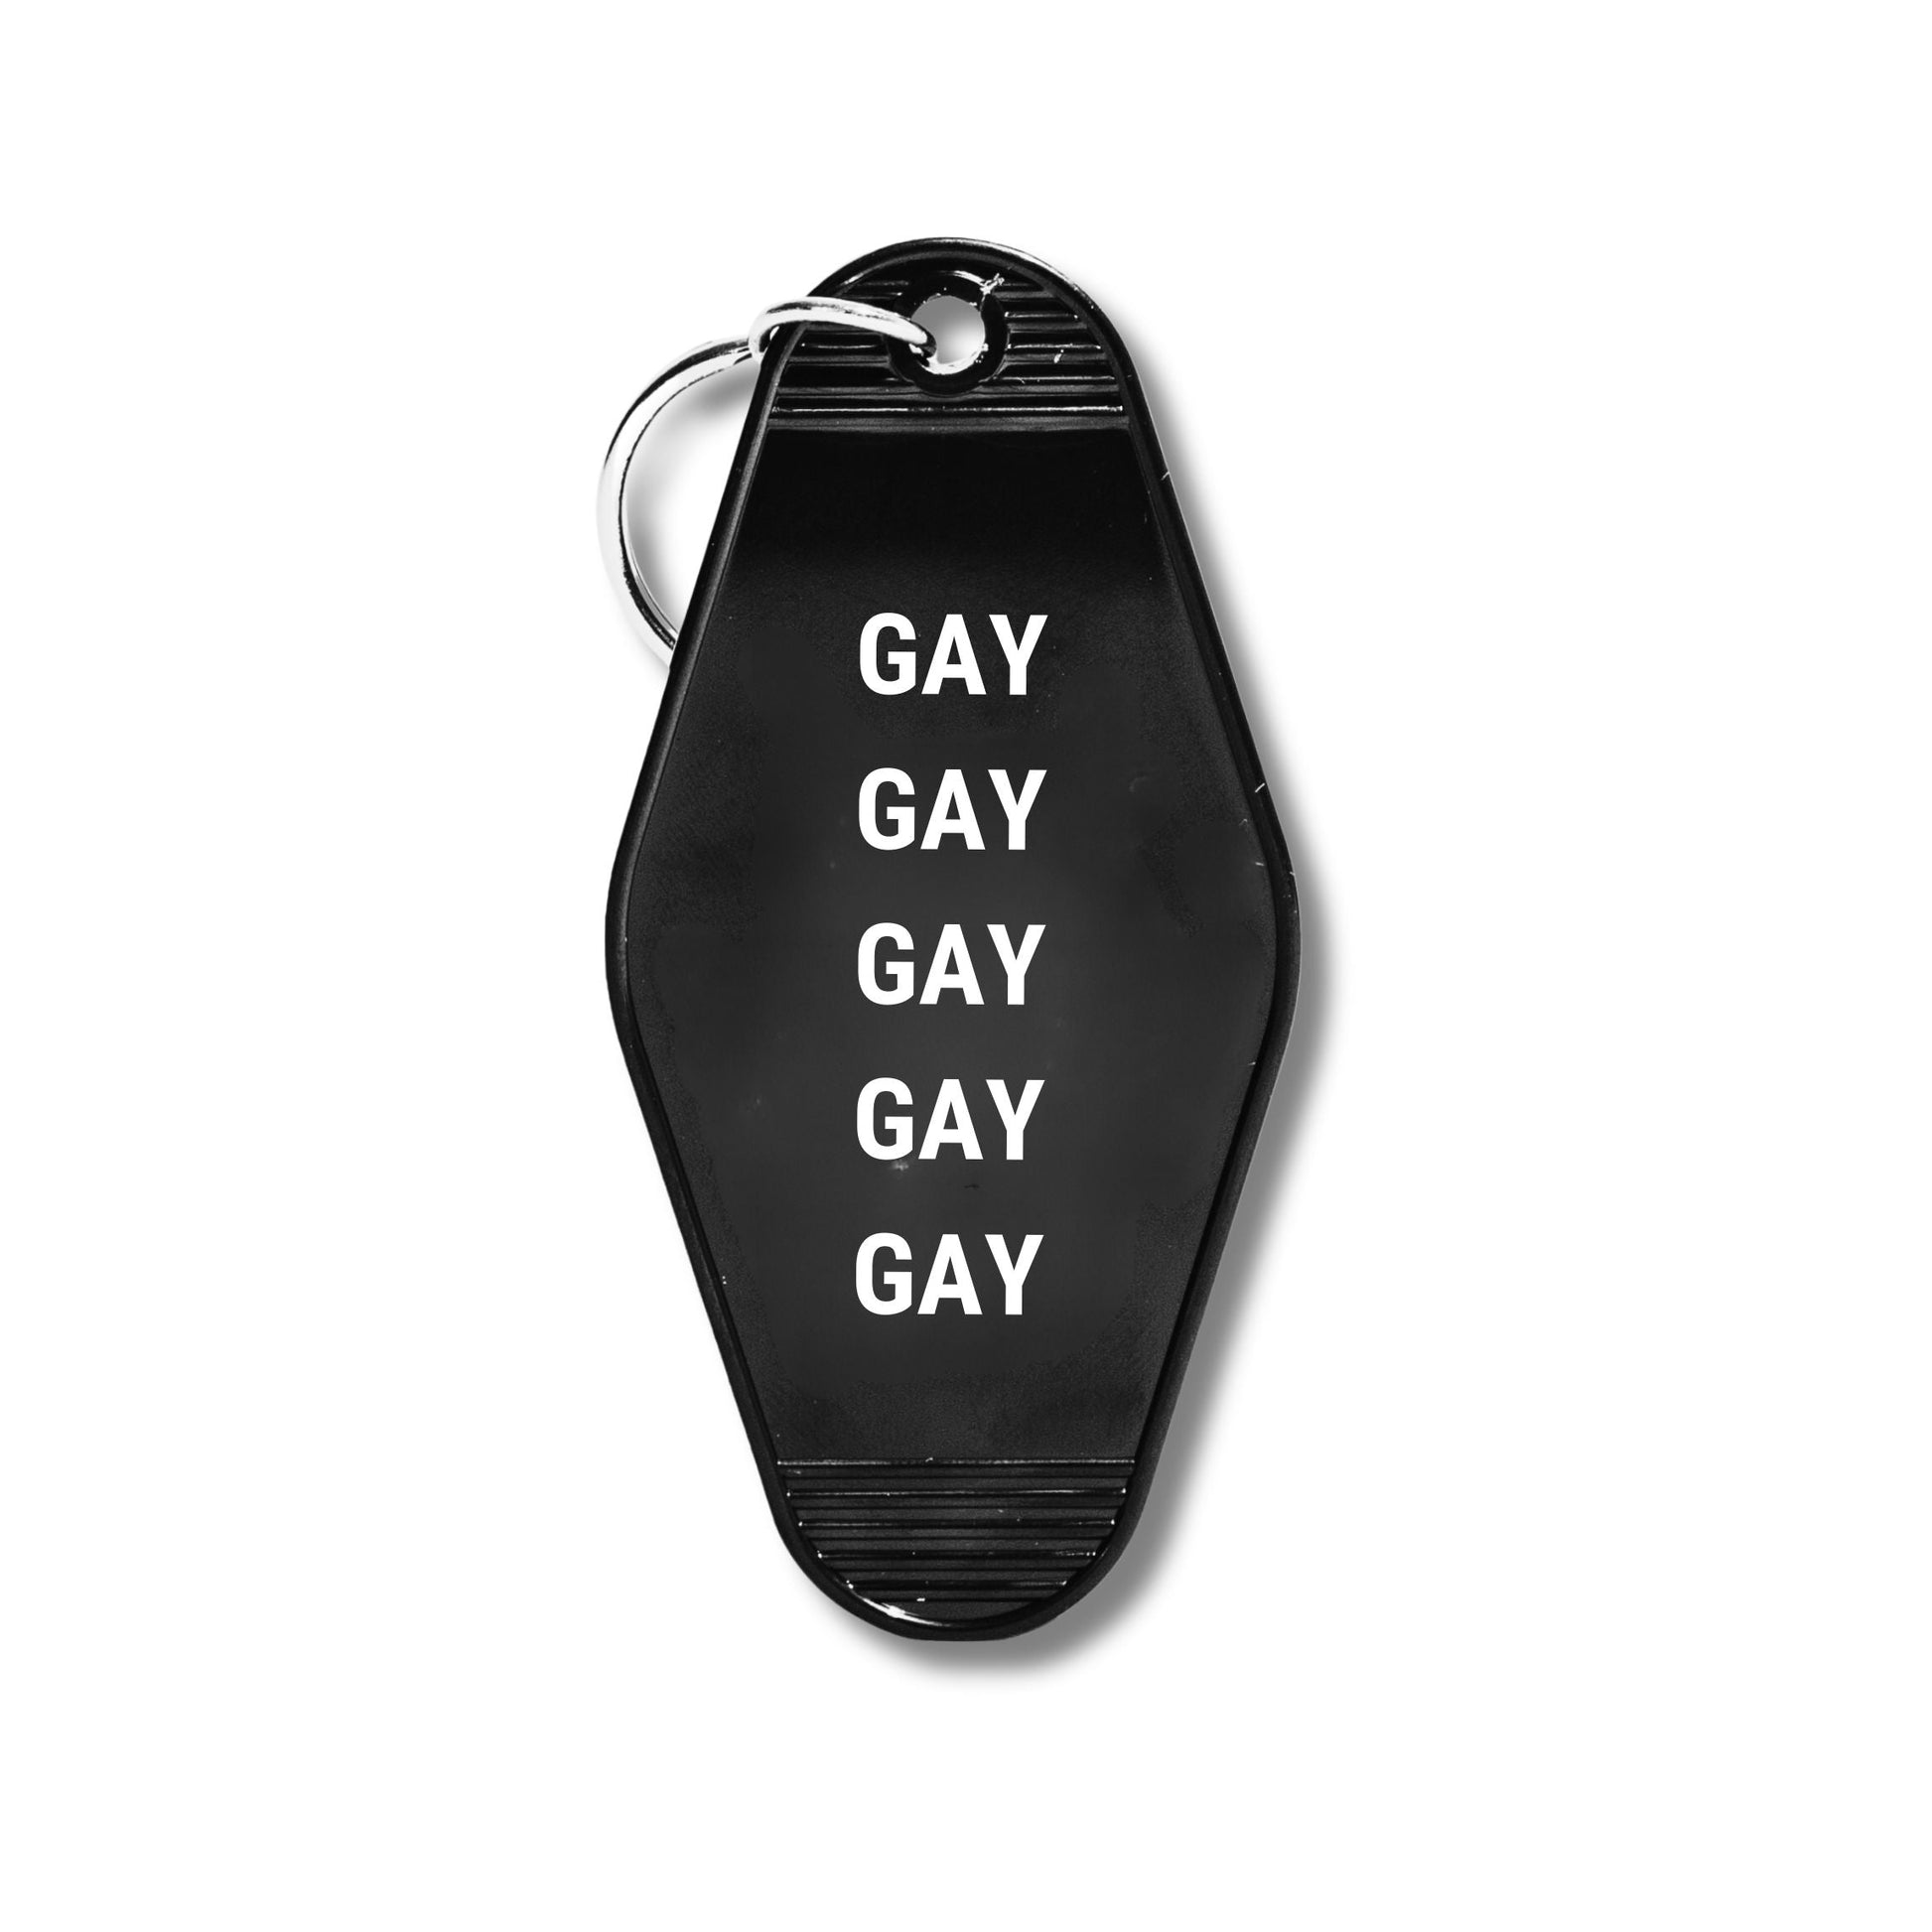 GAY GAY GAY GAY GAY Motel Style Keychain in Black